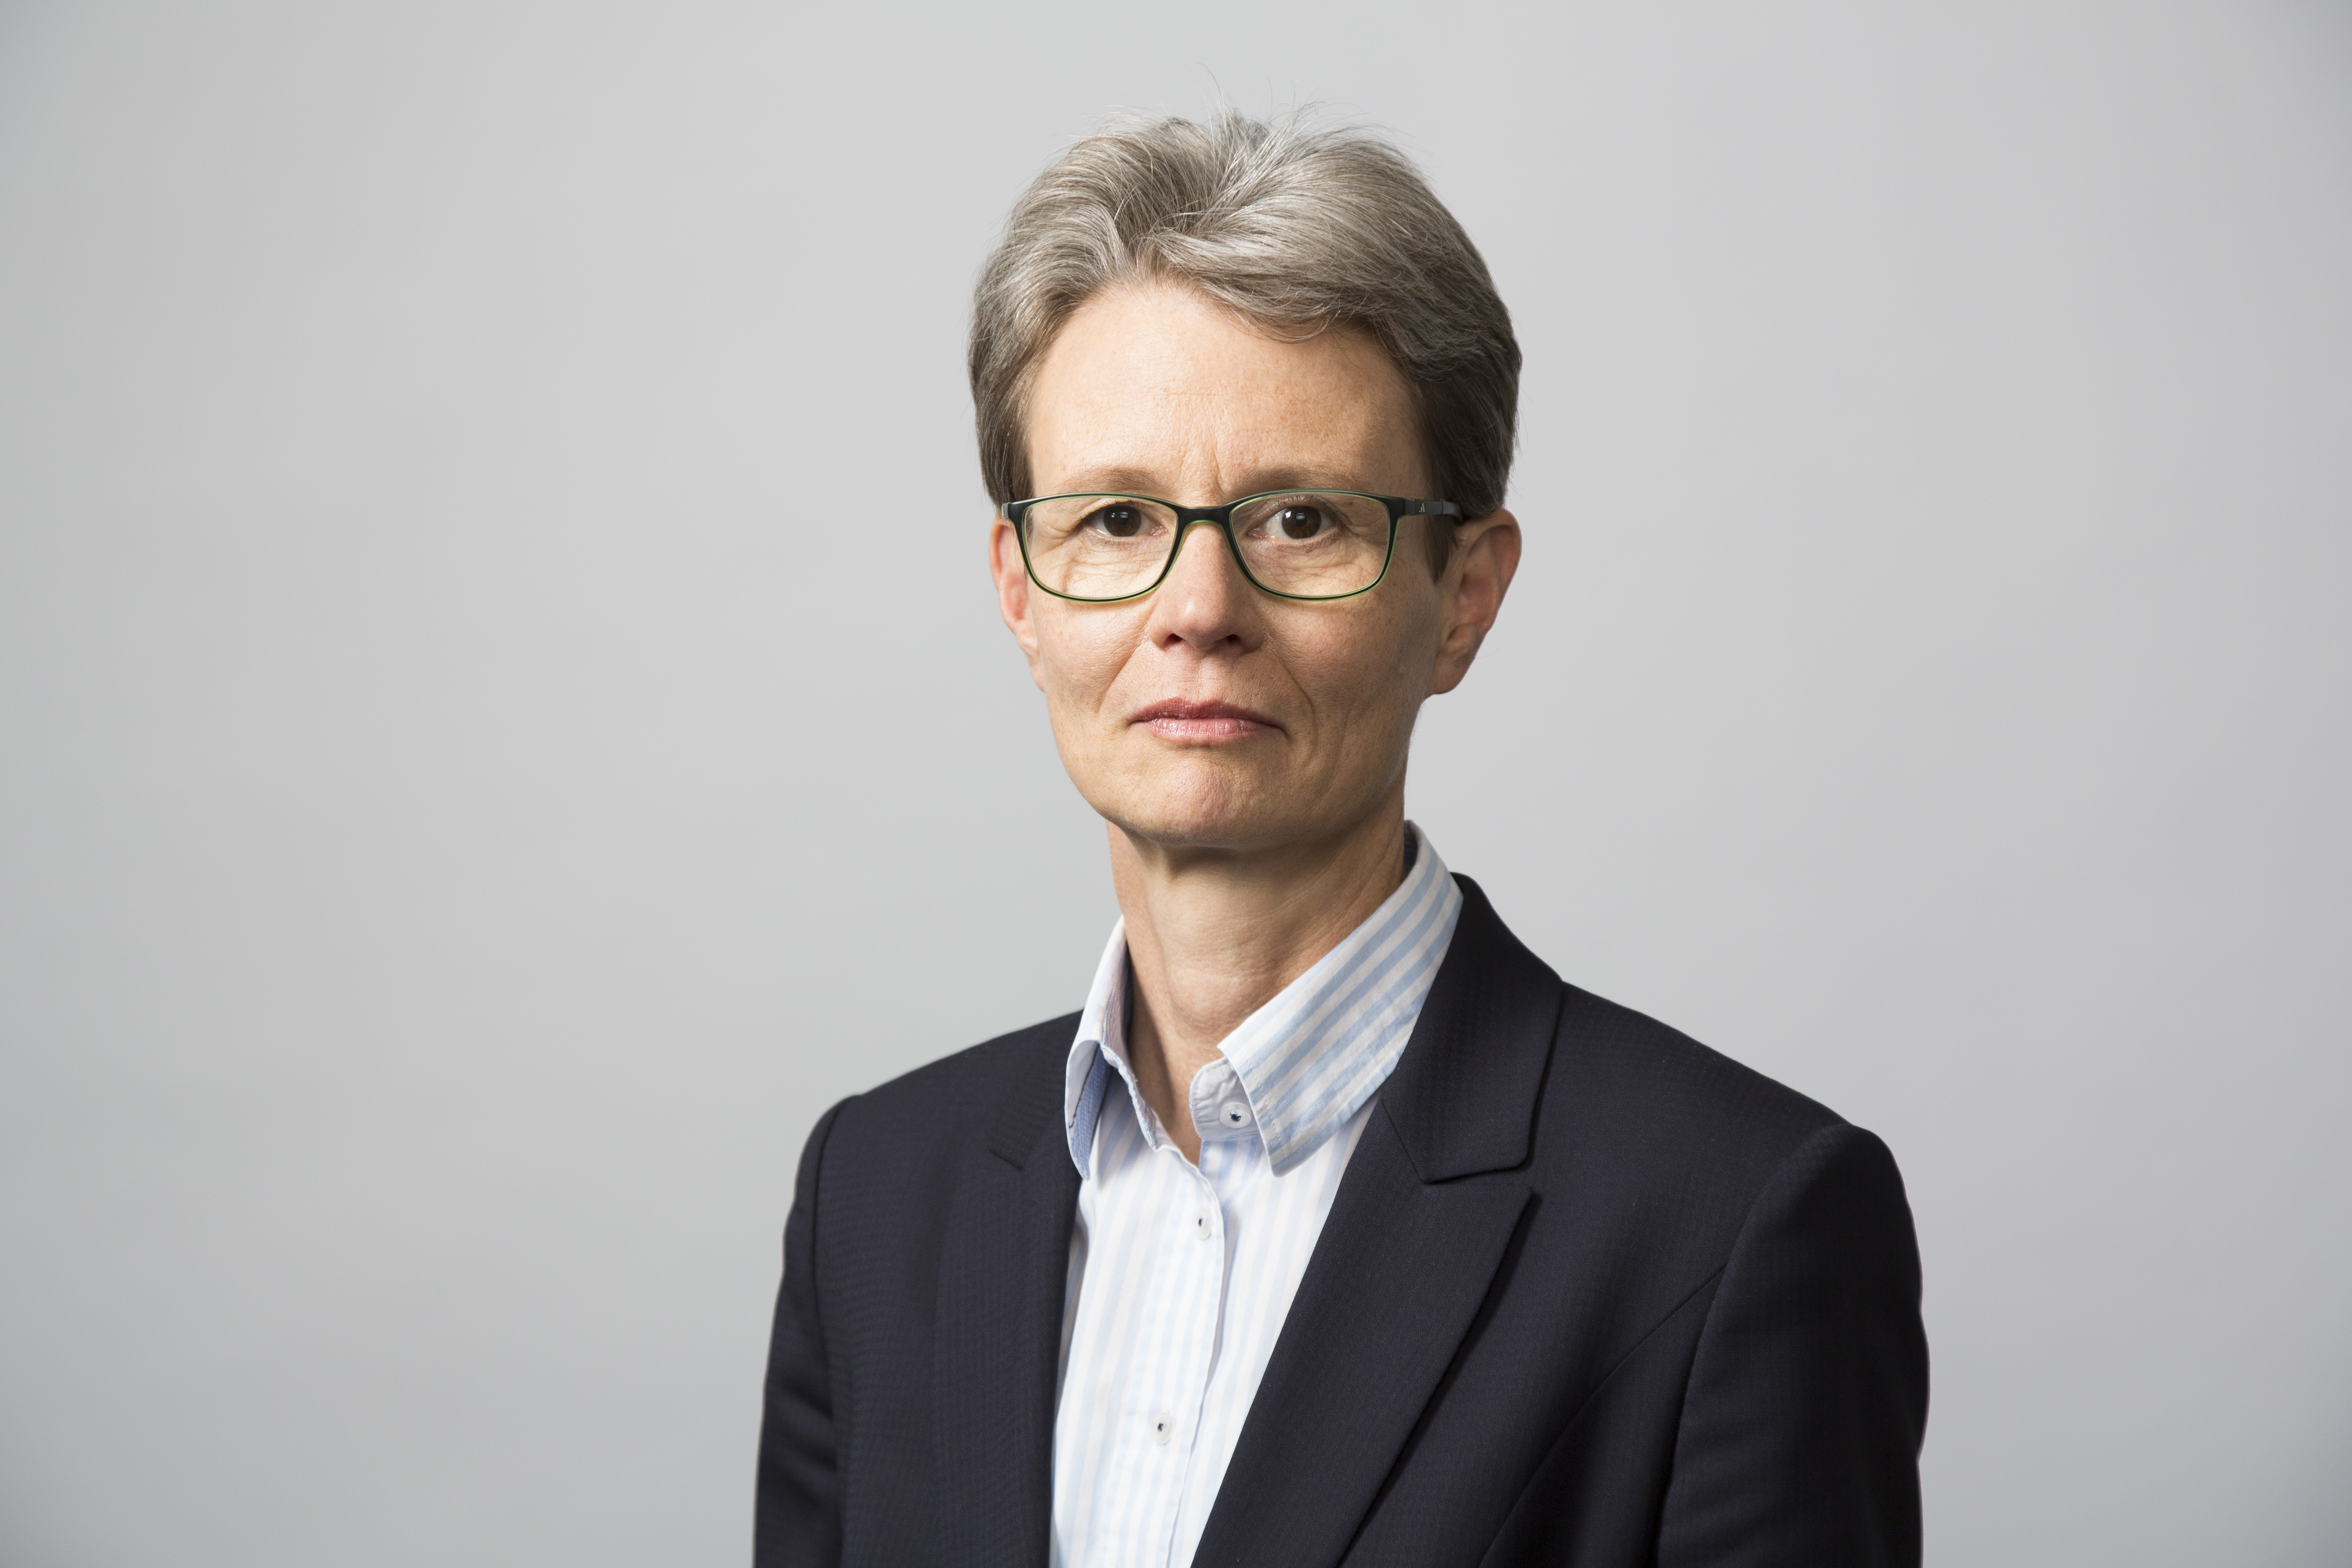 Portraitaufnahme der Abteilungsleiterin Dr. Angela Küster